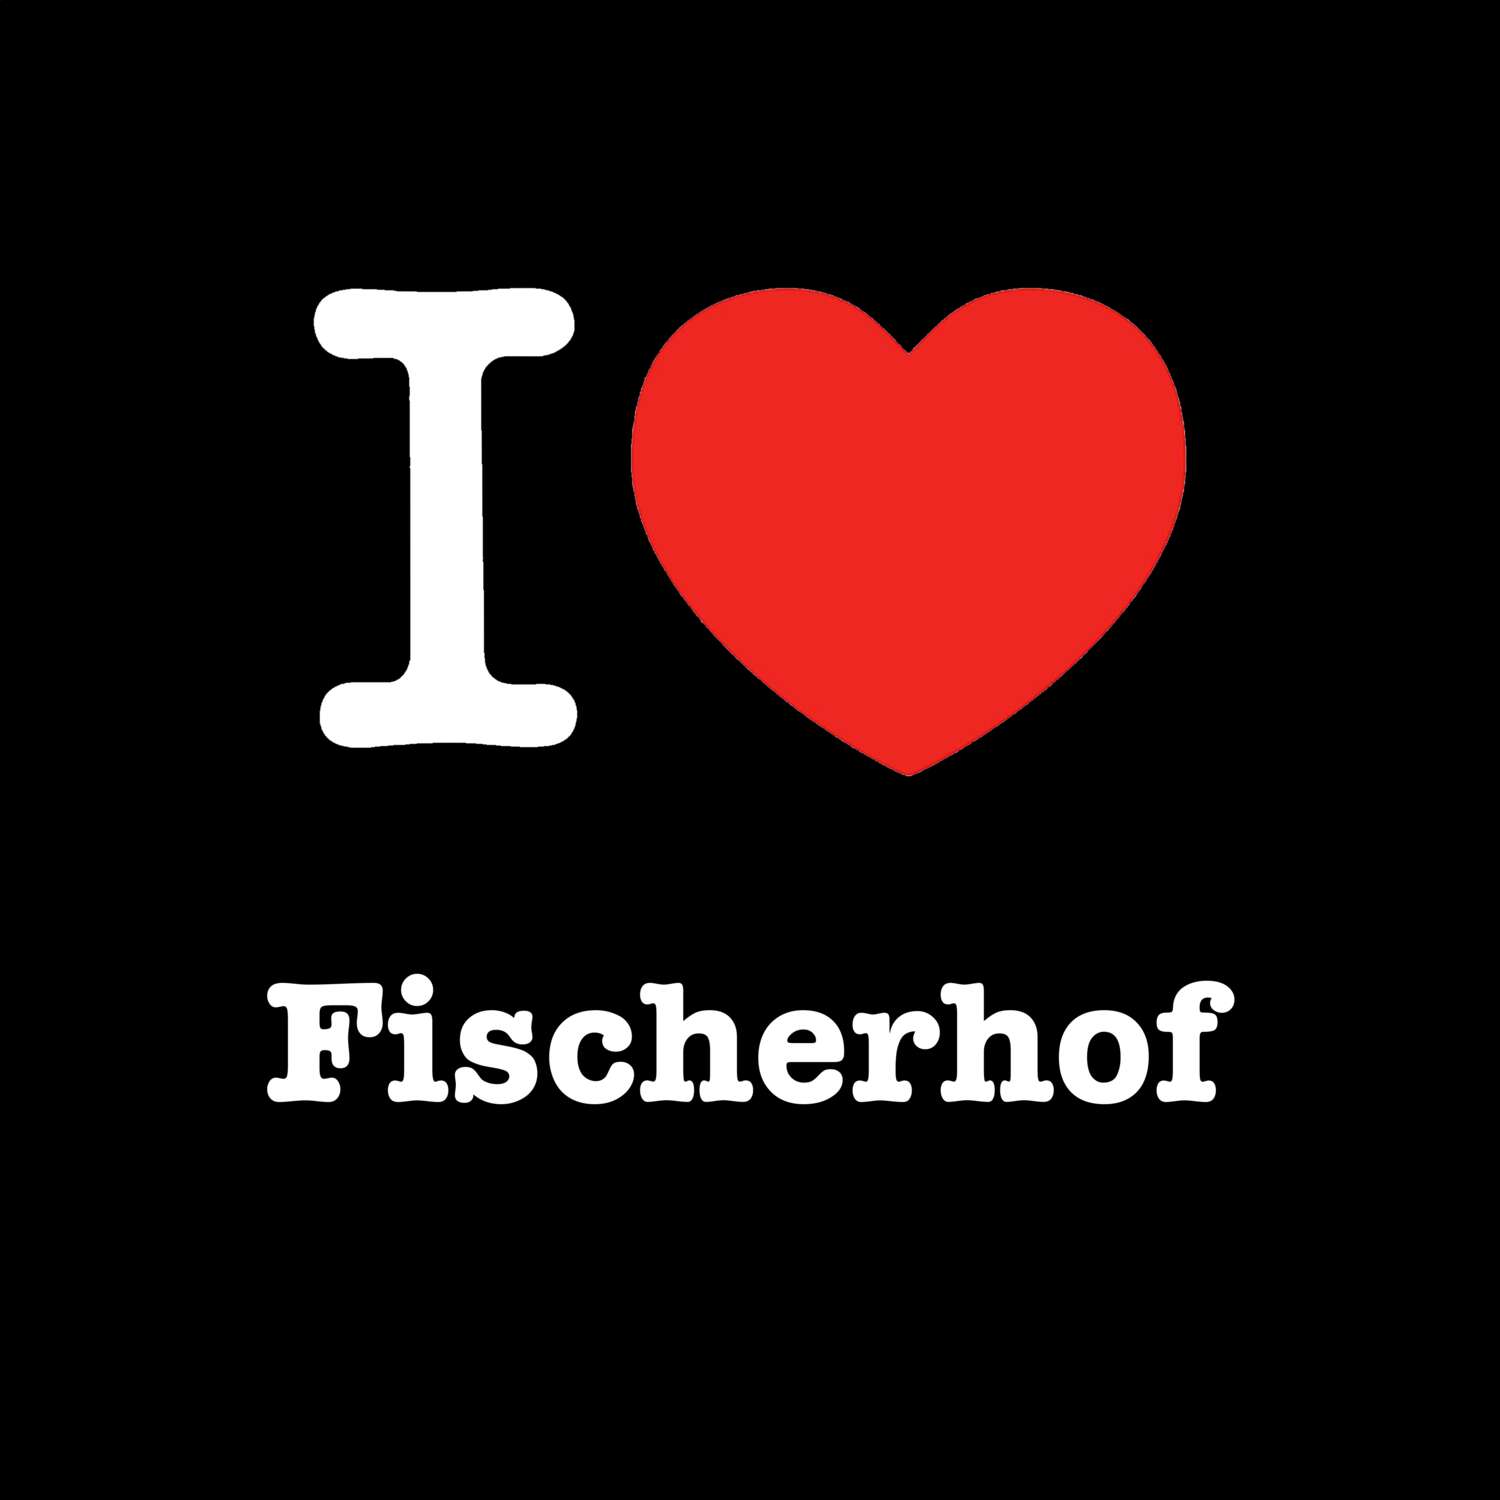 Fischerhof T-Shirt »I love«